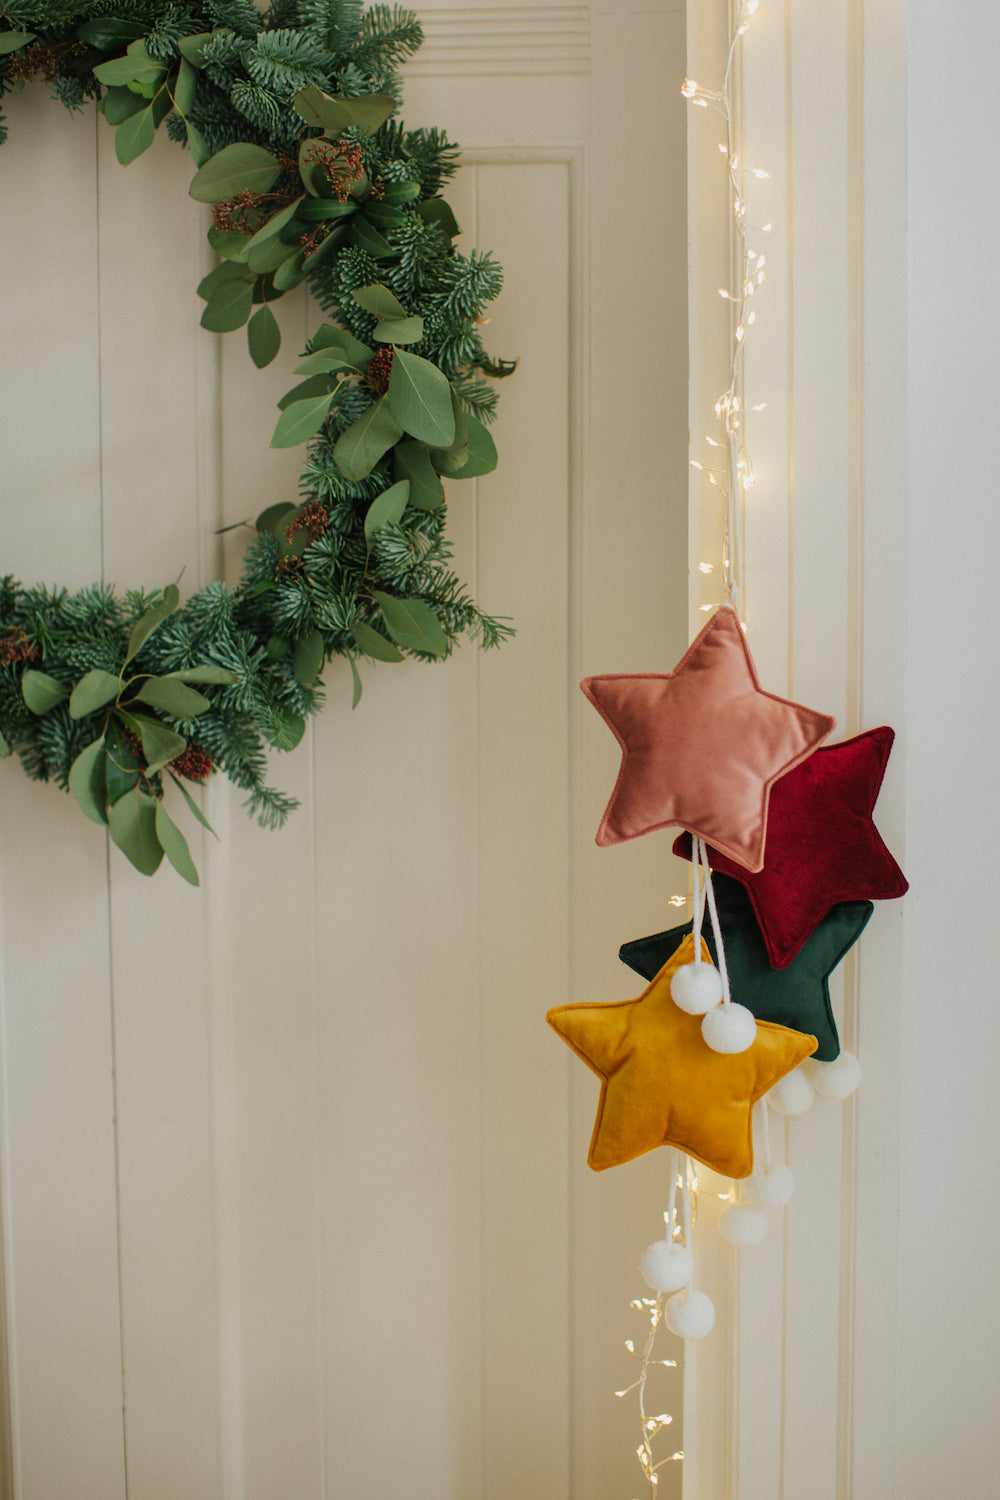 małe zawieszki gwiazdki welurowe wiszące na futrynie drzwi jako dekoracja świąteczna obok wieńca z gałązek